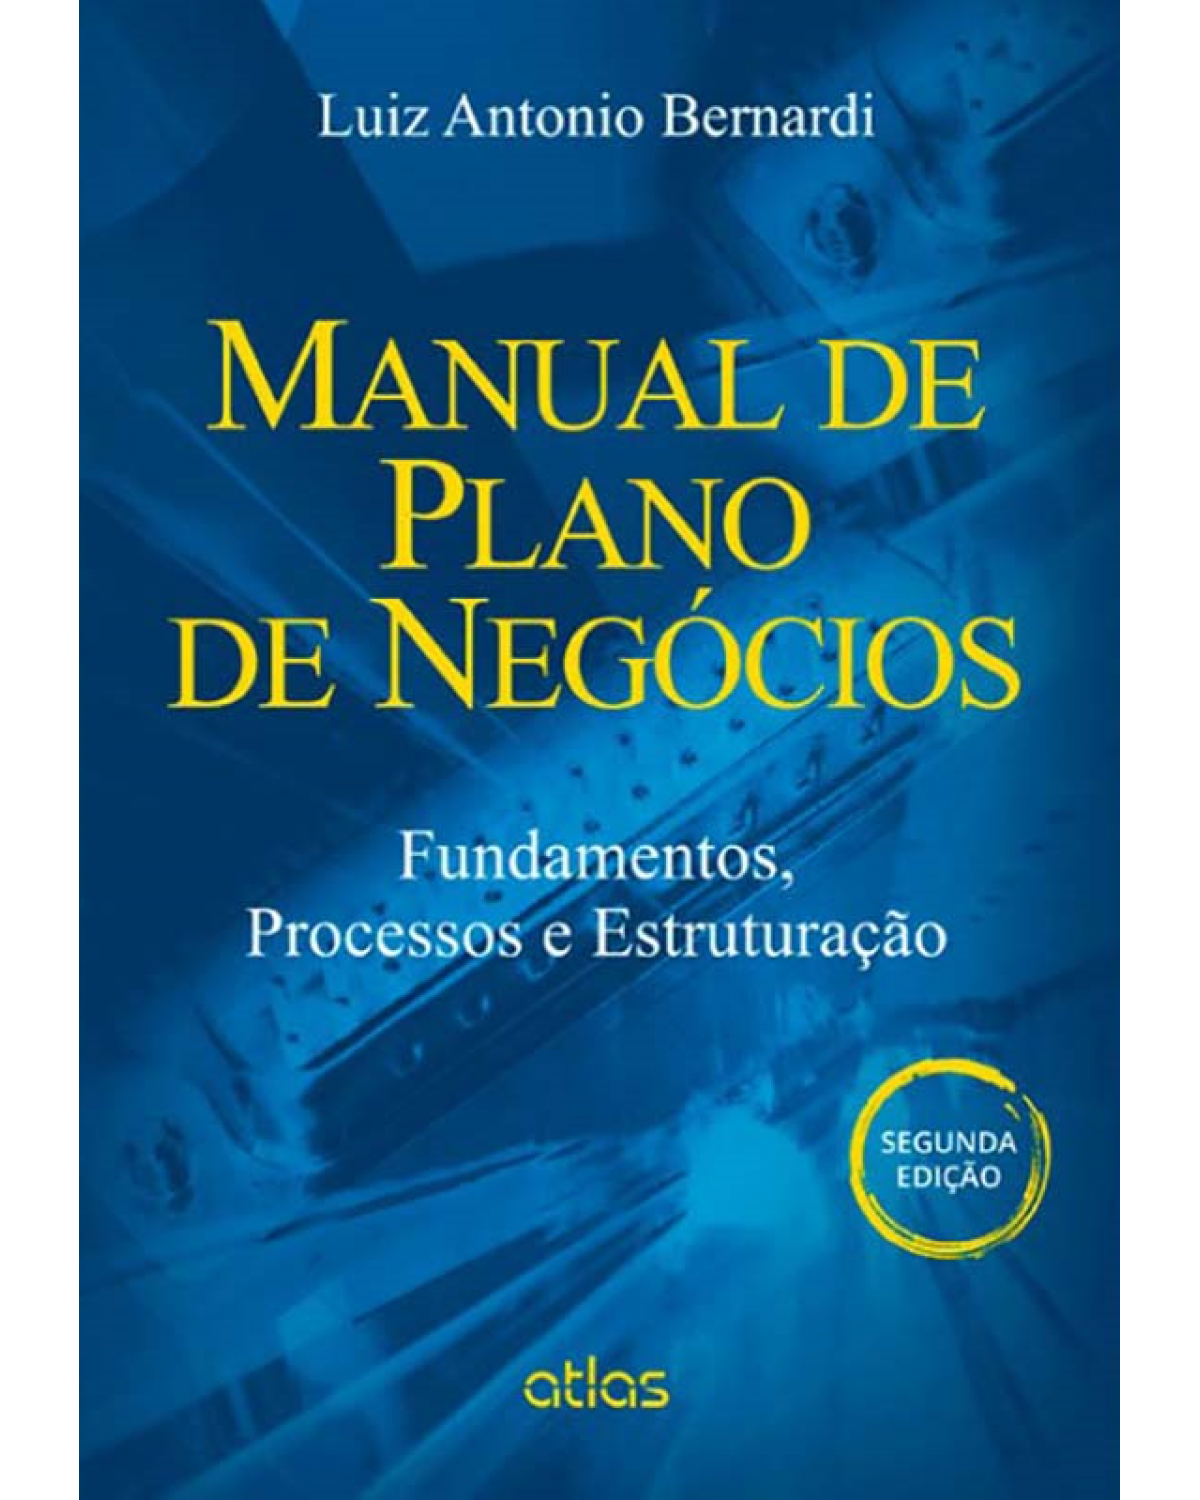 Manual de plano de negócios - Fundamentos, processos e estruturação - 2ª Edição | 2014